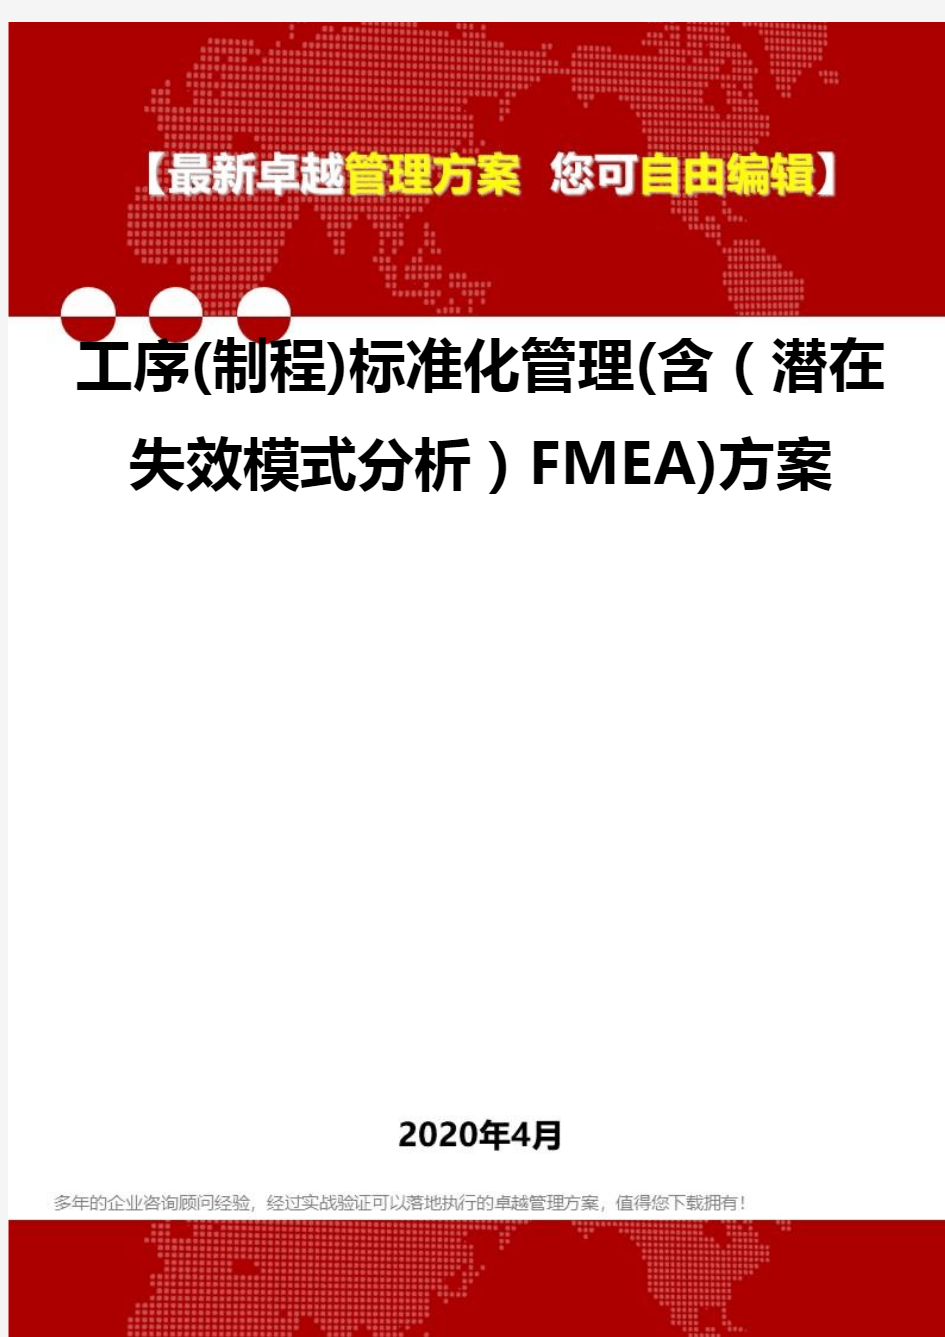 (2020)工序(制程)标准化管理(含(潜在失效模式分析)FMEA)方案